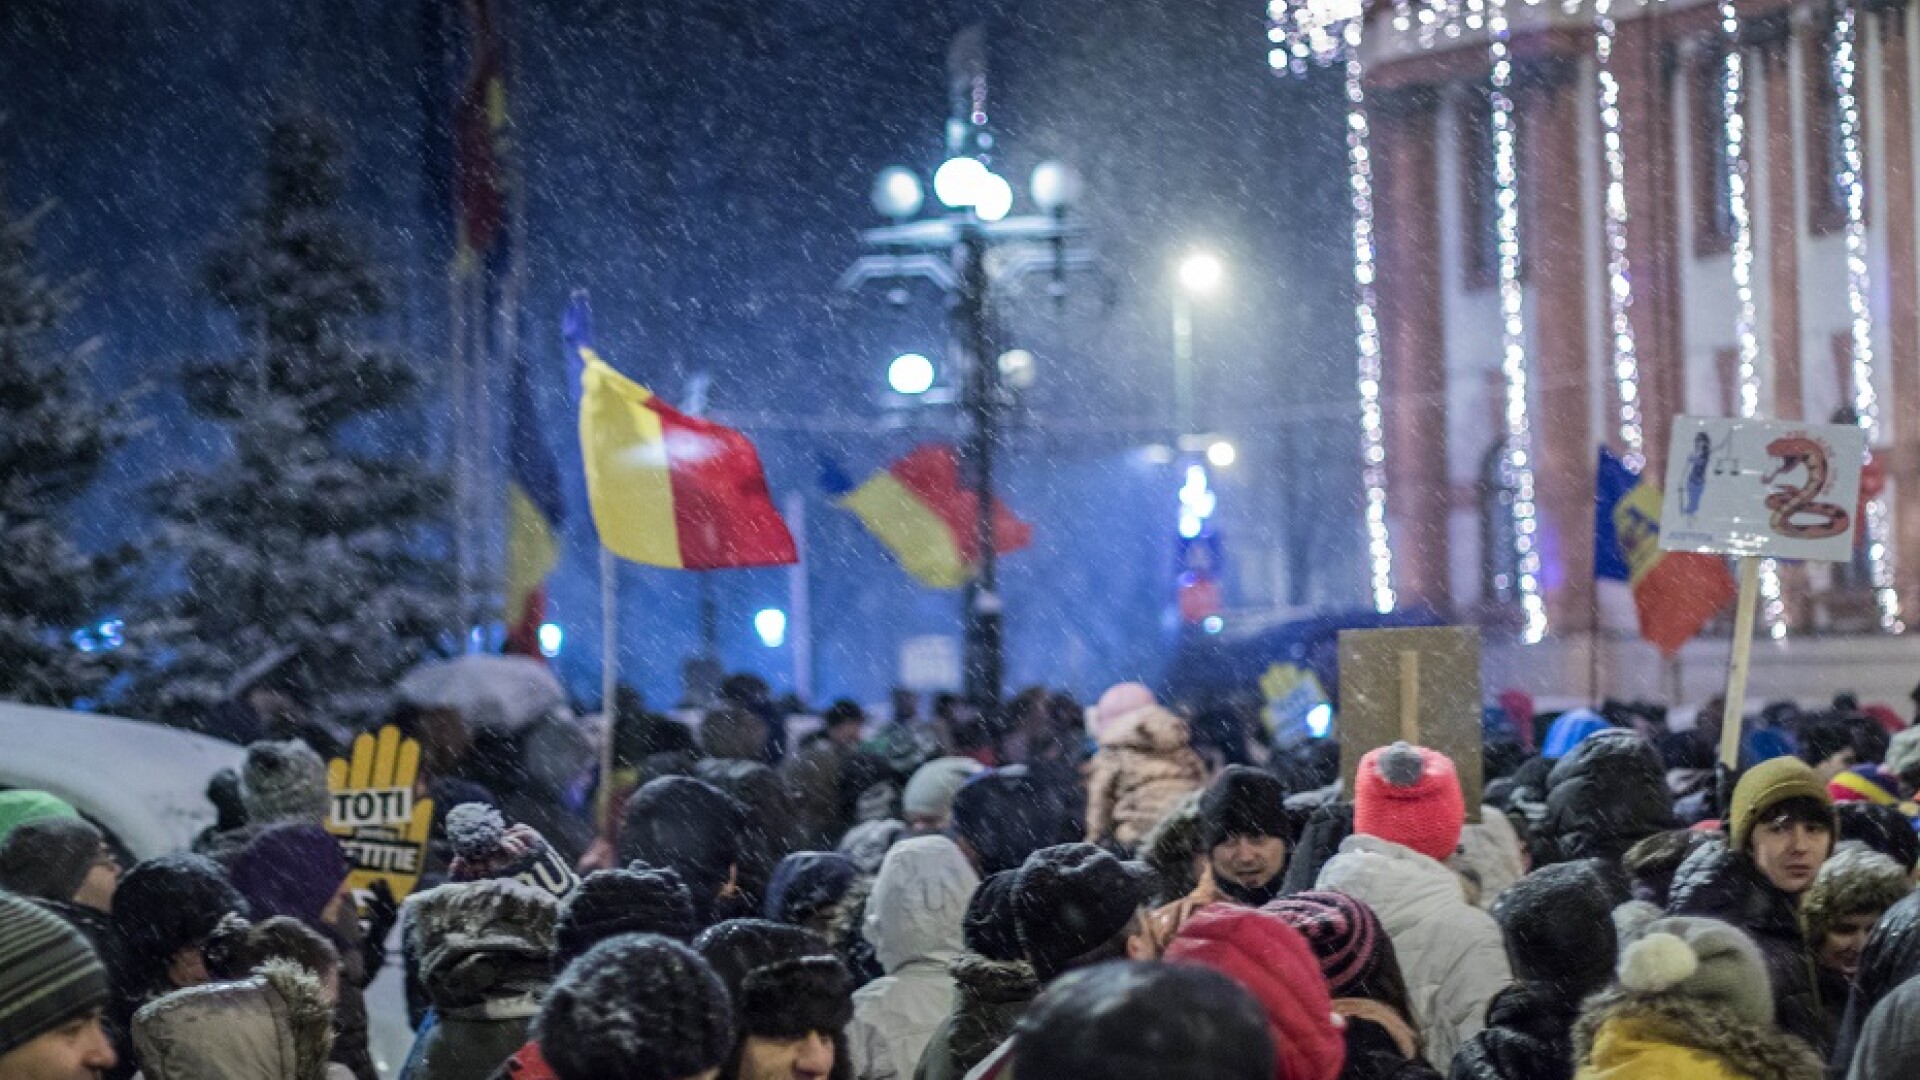 protest la Brasov impotriva modificarii legilor justitiei